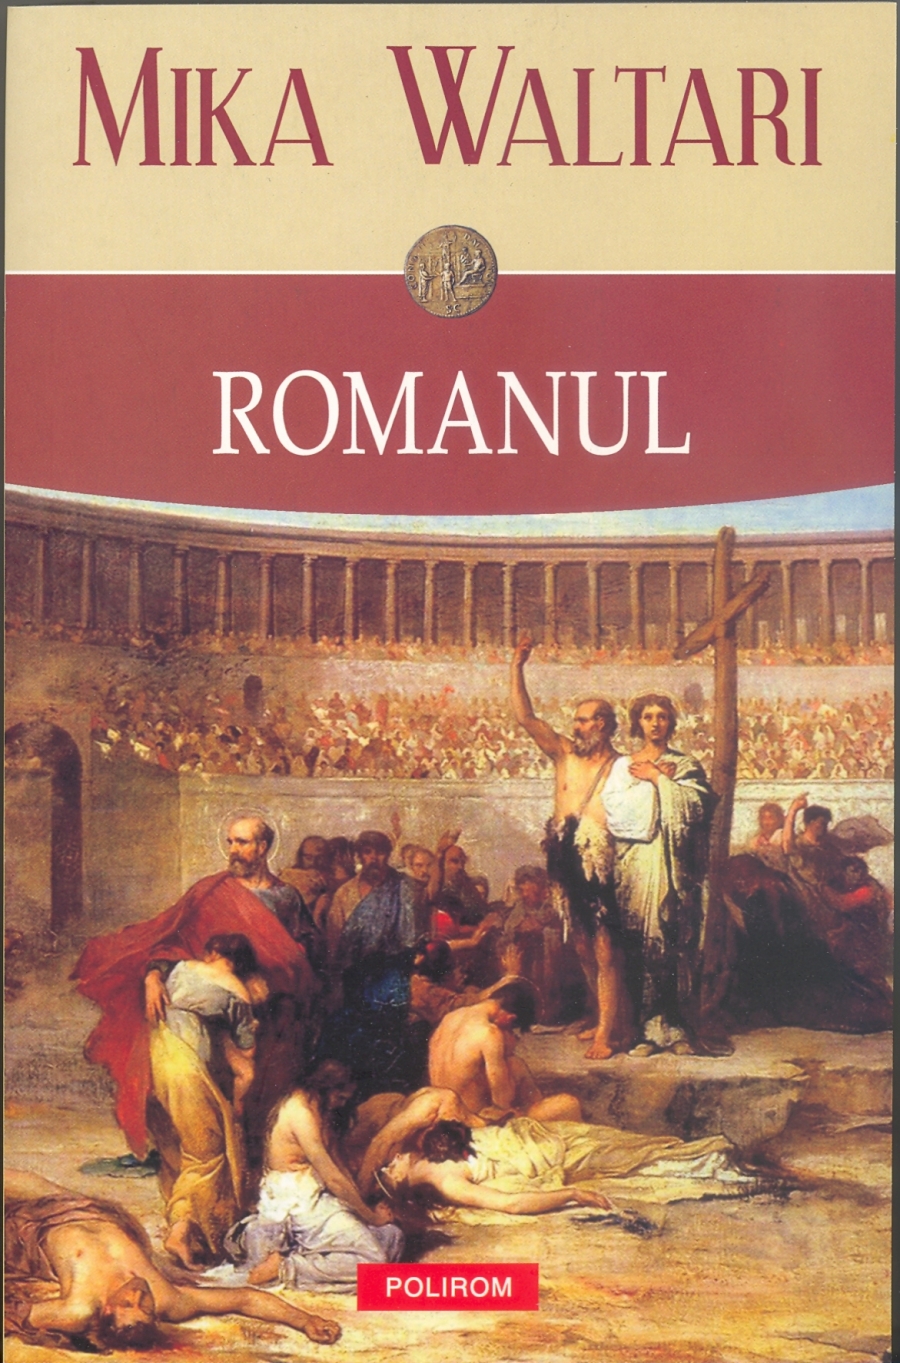 UȘOR DE CITIT! Cum făceau oamenii carieră, în Roma Antică. ”Romanul”, de Mika Waltari